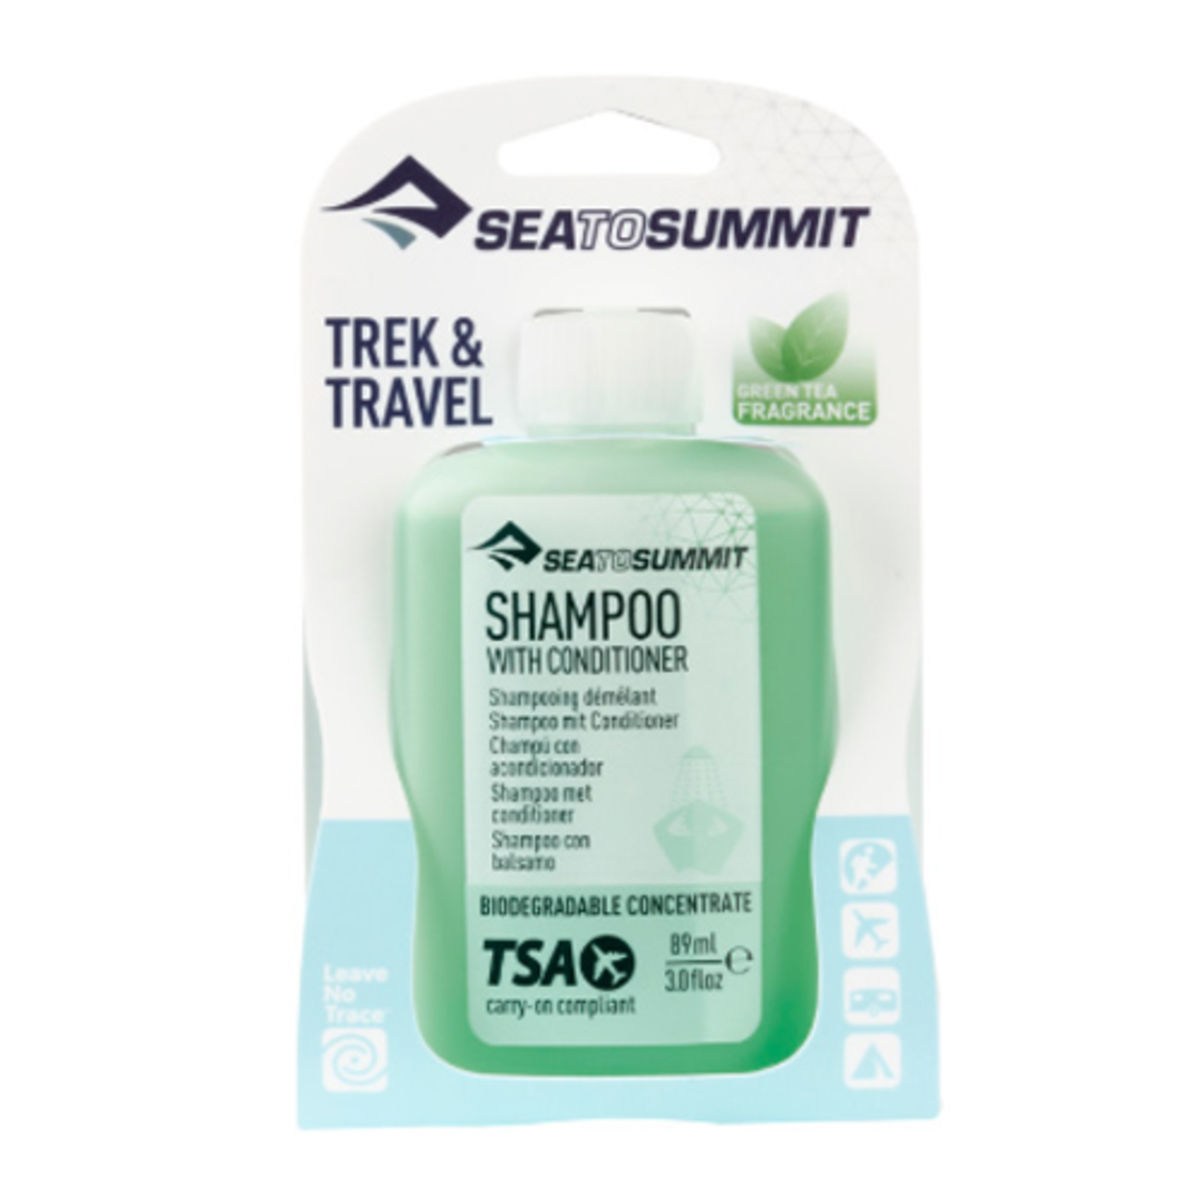 Shampooing démêlant concentré biodégradable Sea to Summit - Trek et voyage